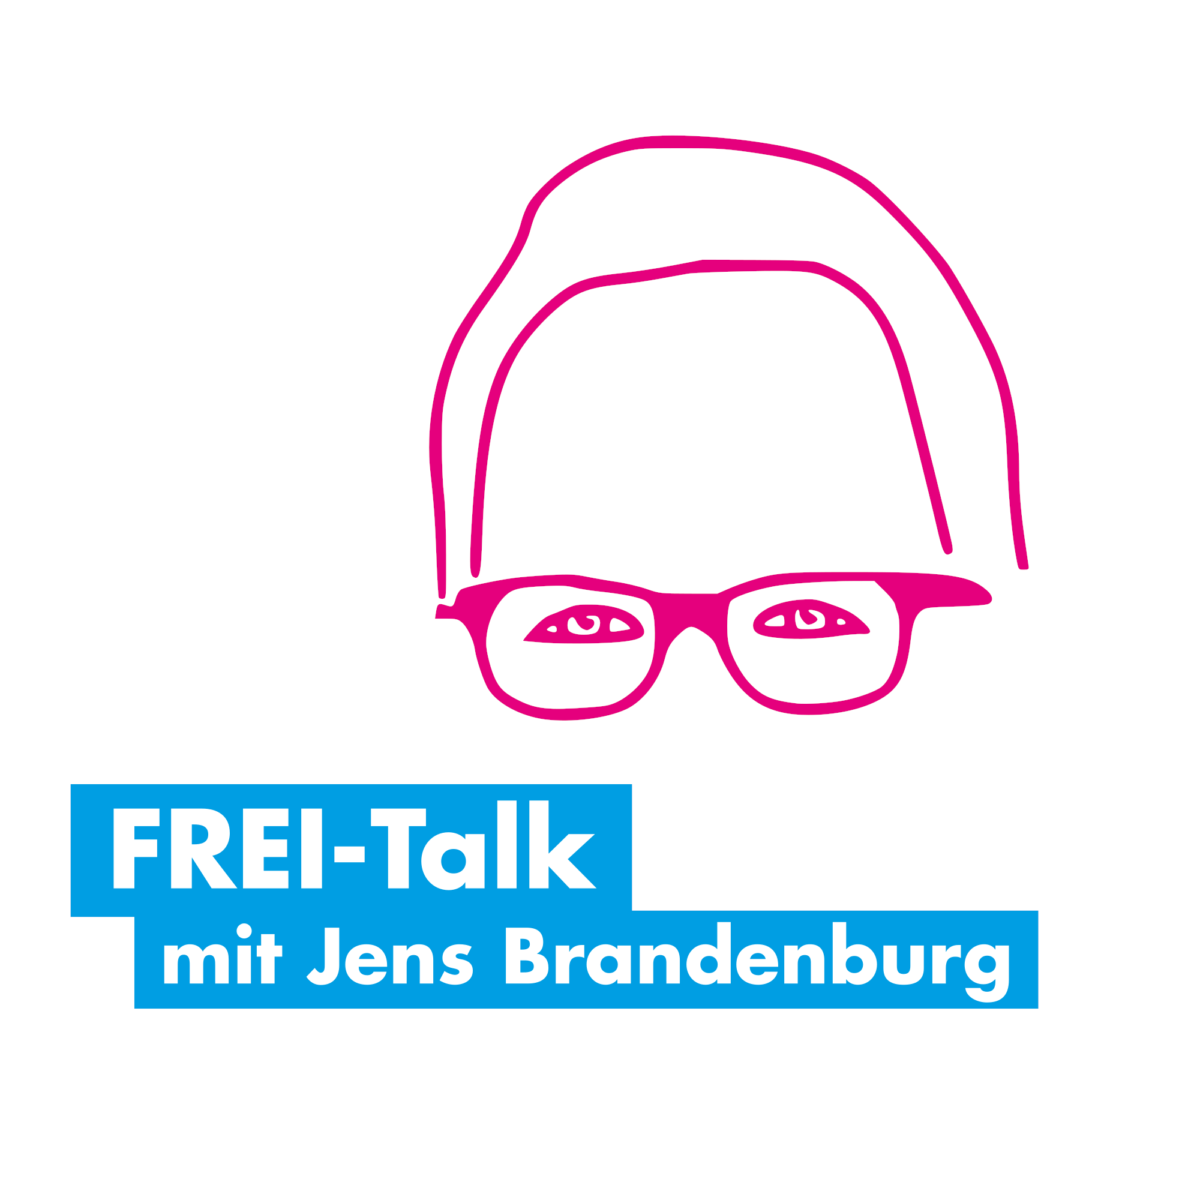 FREI-Talk mit Jens Brandenburg am 23.07.2021